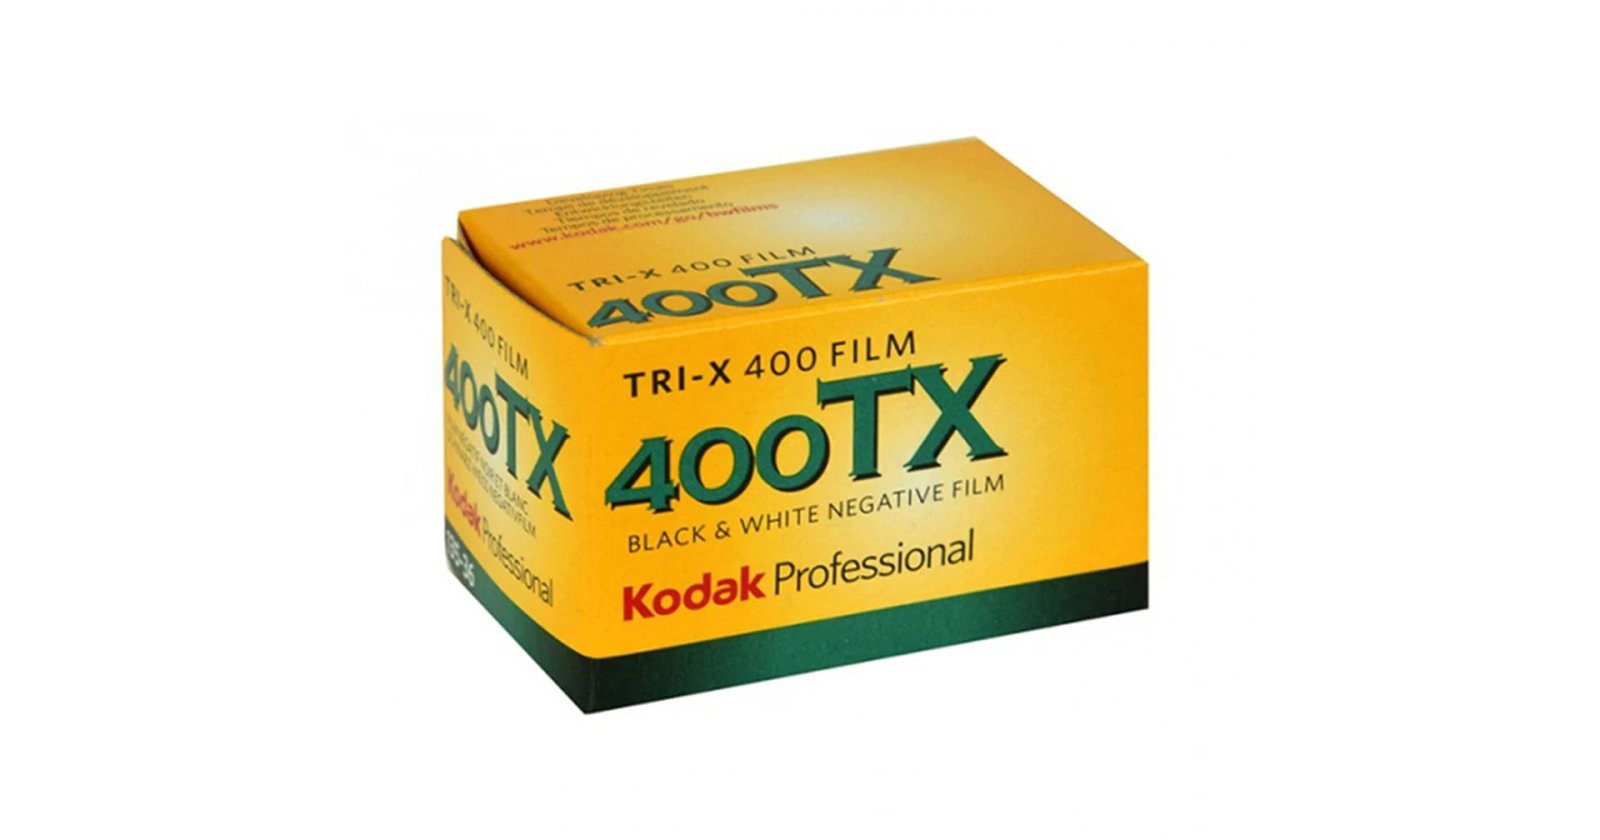 ชาวกล้องฟิล์มมีเฮ! Kodak ปรับลดราคาฟิล์มขาวดำ Tri-X 400 ลง 30%